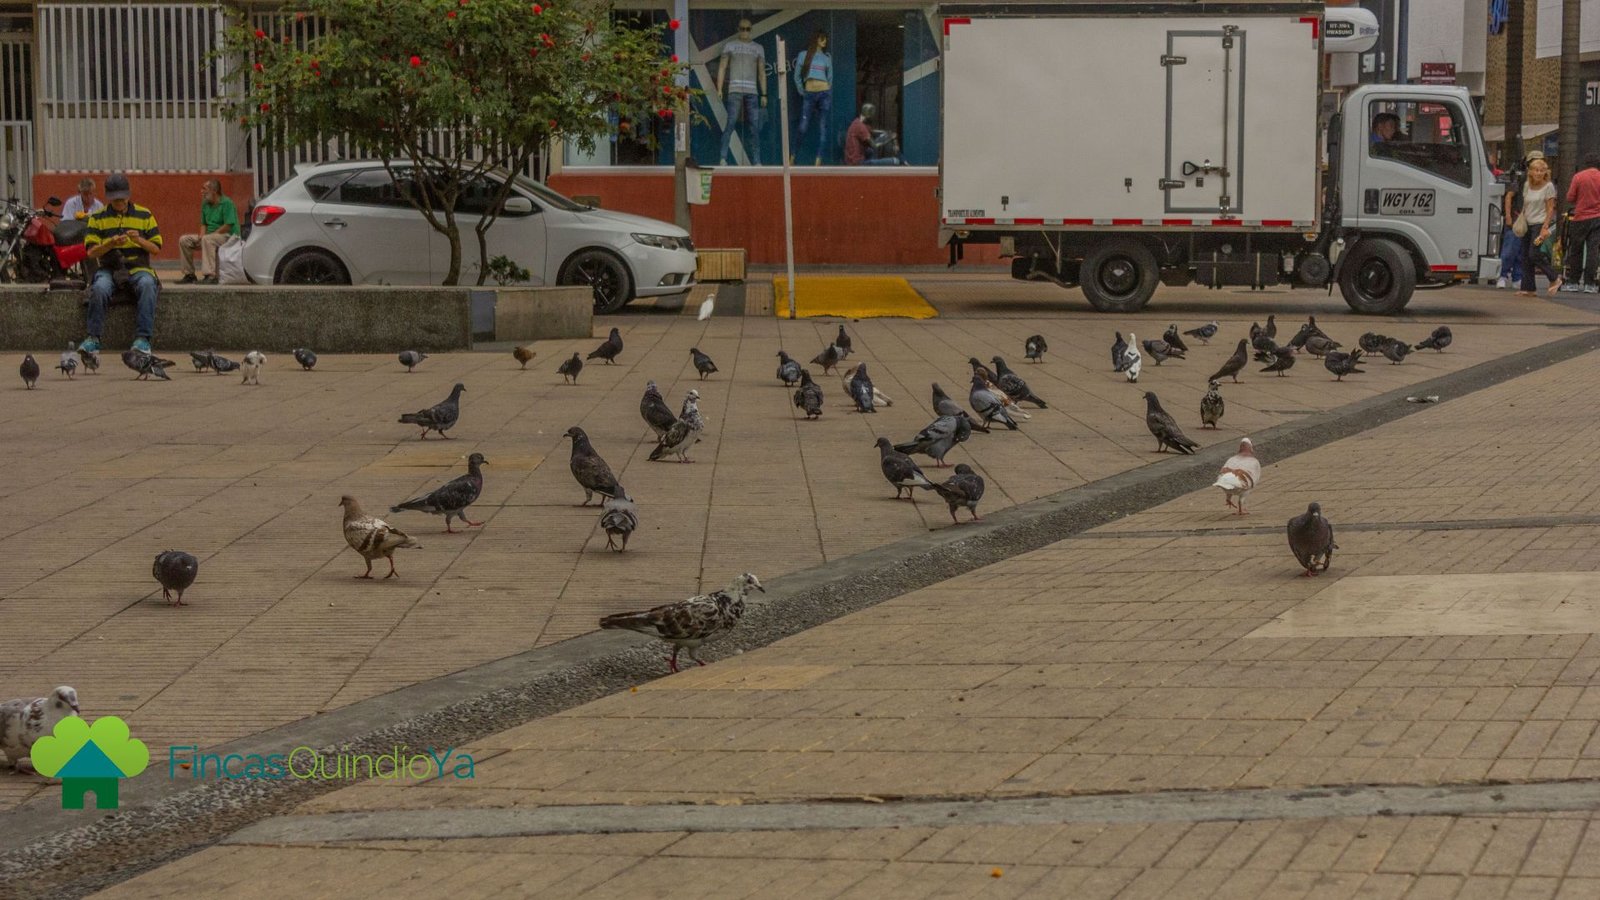 Foto que muestra palomas en el piso de un parque